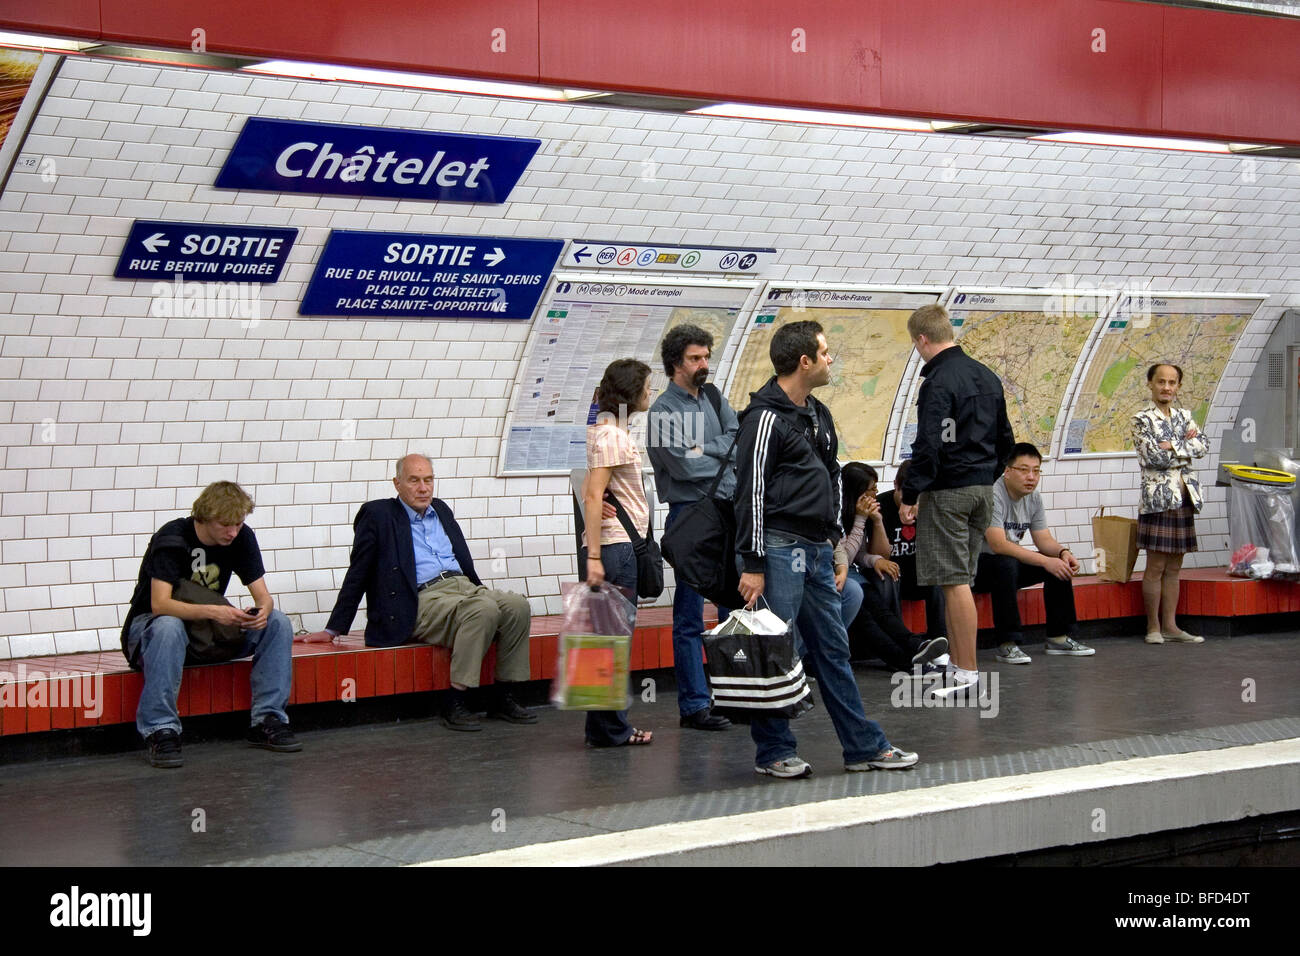 Les gens attendent sur le quai de métro de la station de métro Châtelet Paris à Paris, France. Banque D'Images